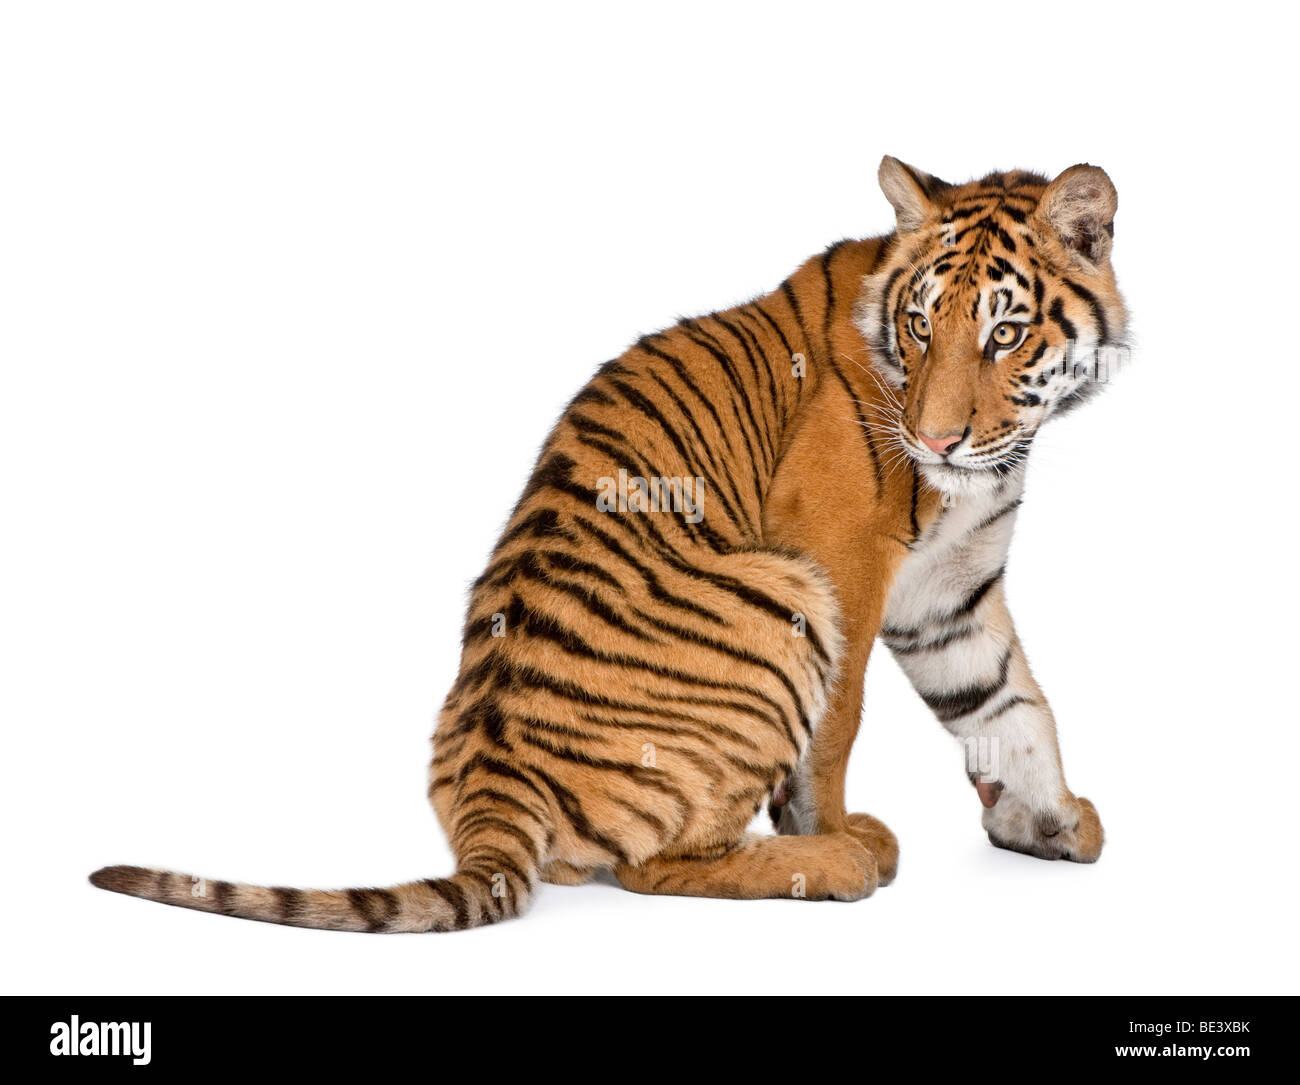 Bengal Tiger, Panthera tigris tigris, 1 year old, sitting in front of white background, studio shot Stock Photo